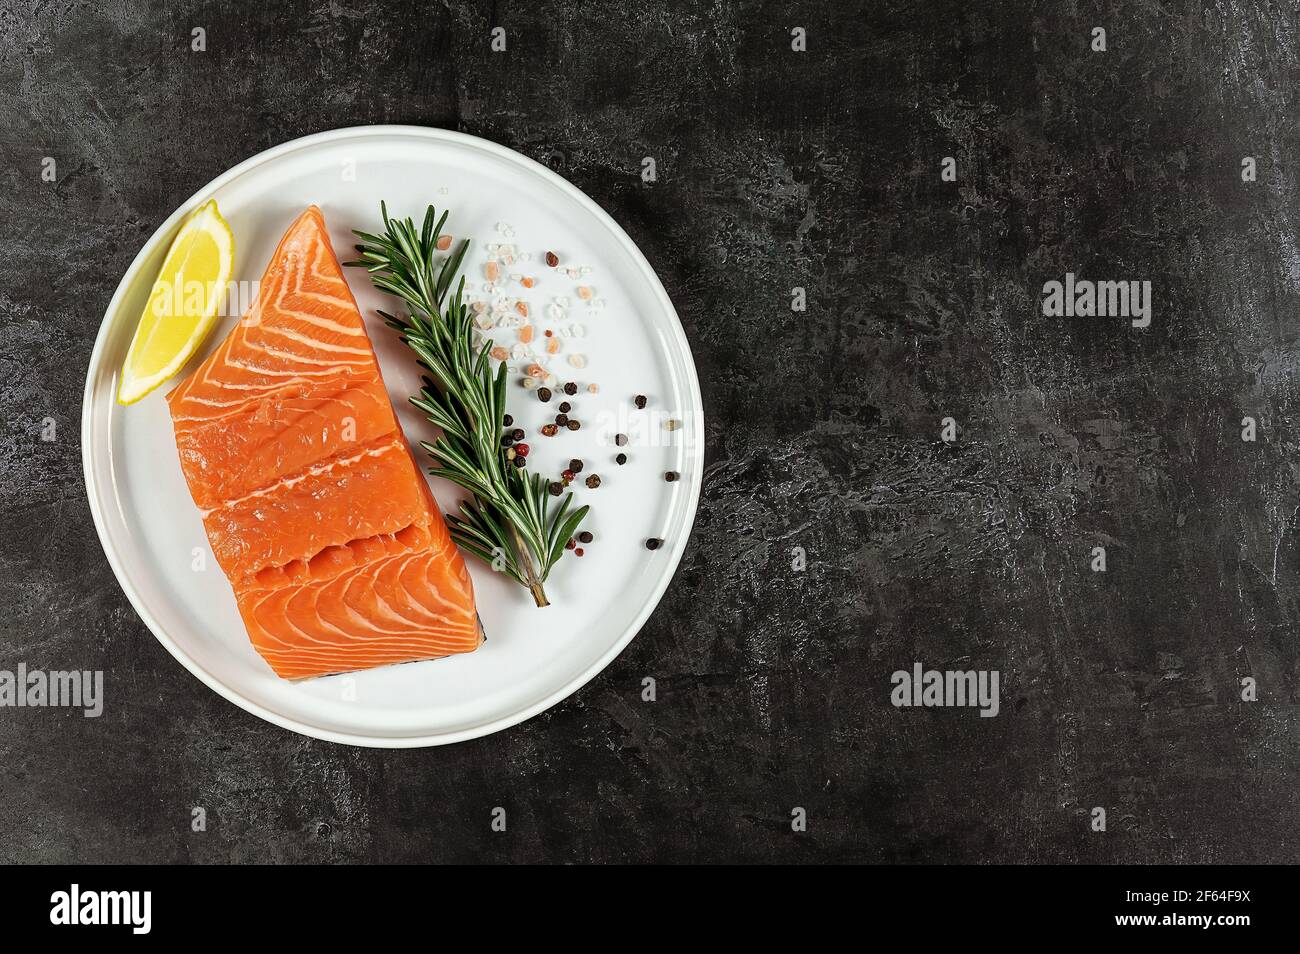 Salmone fresco dell'Atlantico crudo sul piatto. Grande fonte di acidi  grassi omega-3, proteine, potassio e selenio Foto stock - Alamy